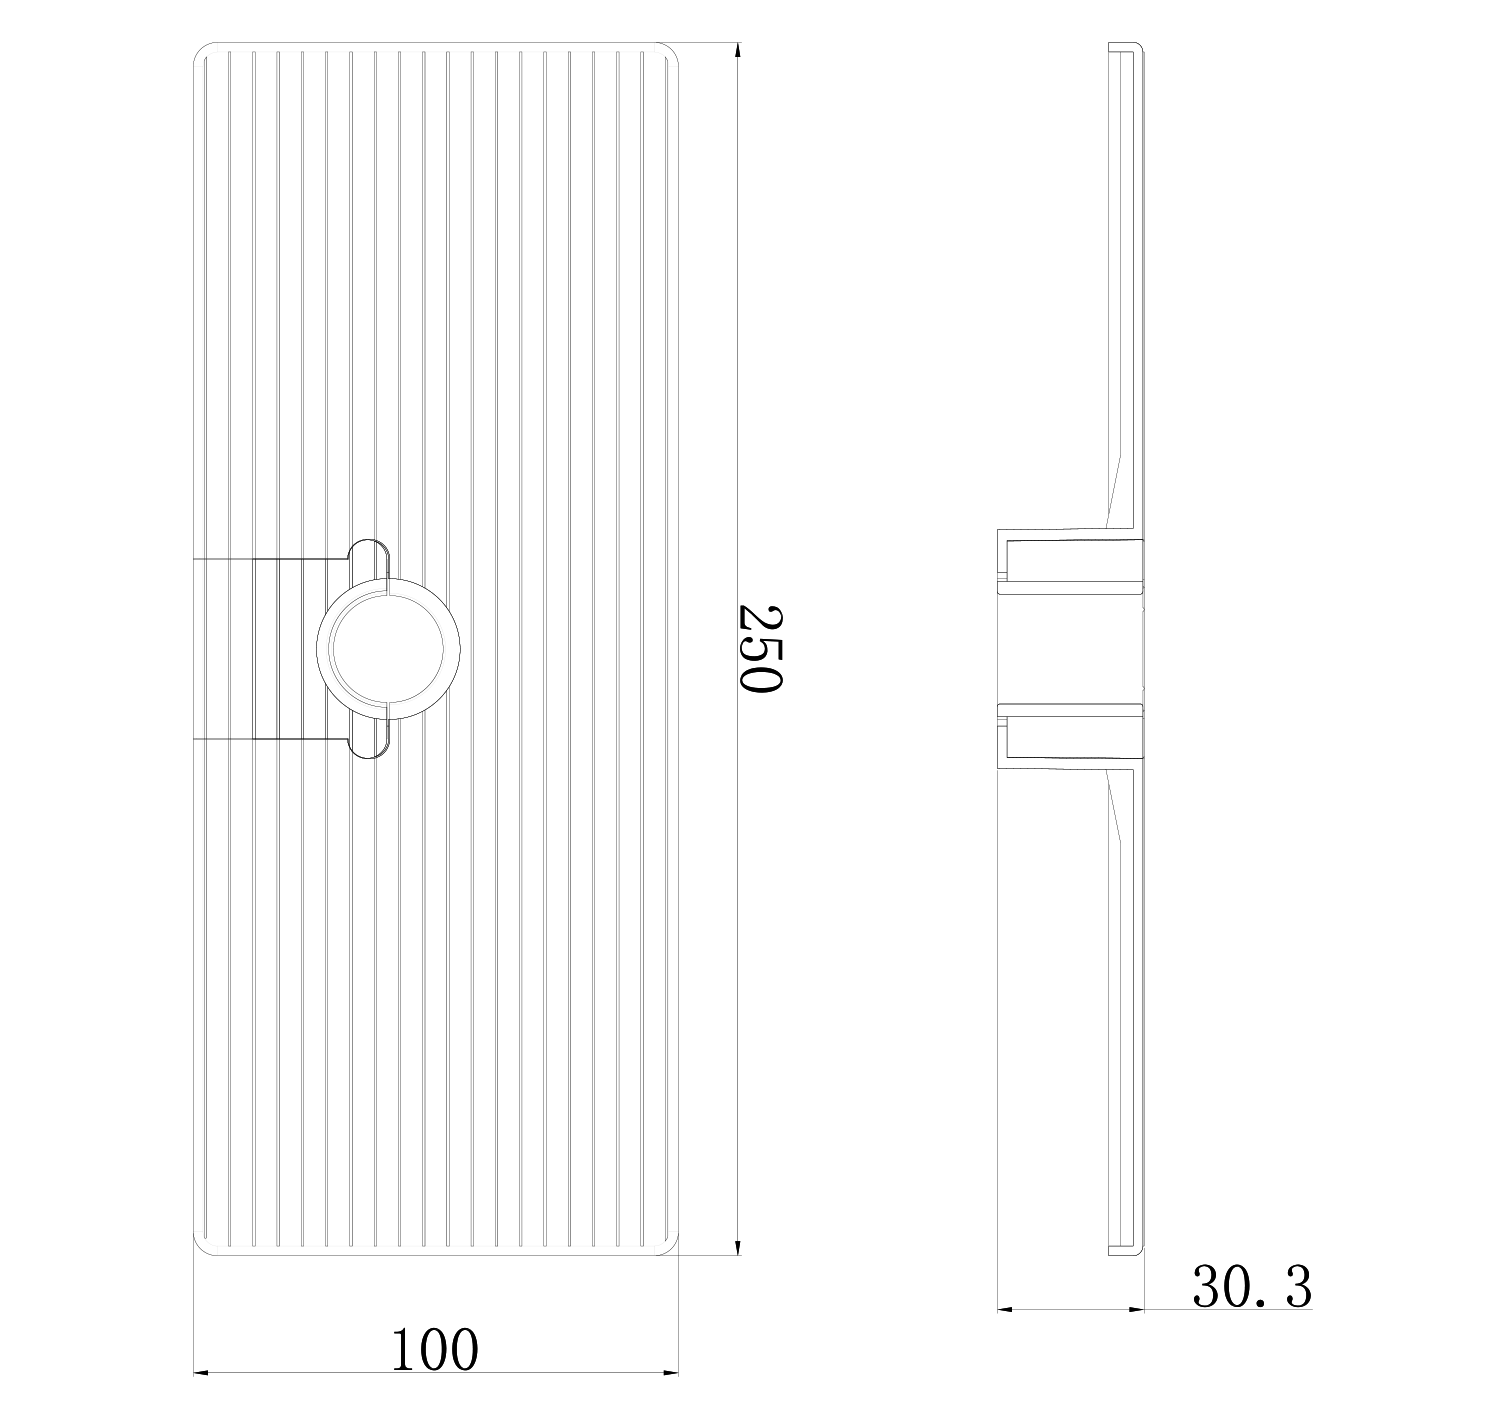 Ablageschale für Brausestangen (diam. 18, 20, 22, 25 mm), ABS/Chrom